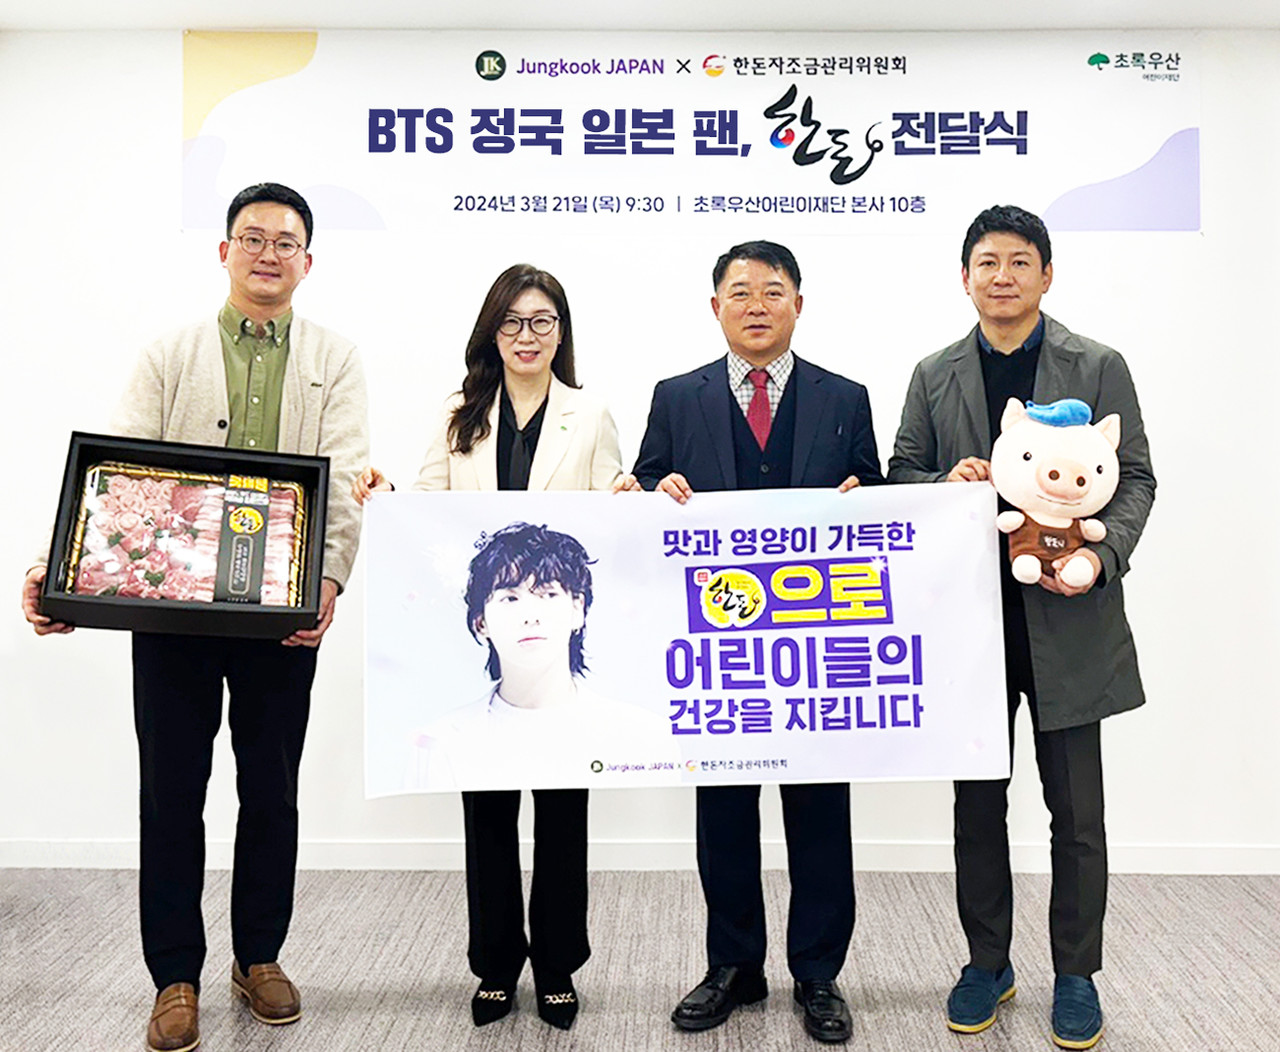 한돈자조금과 정국 재팬(Jungkook JAPAN)이 초록우산어린이재단에 500만 원 상당의 한돈을 기부했다. 사진 제공=한돈자조금